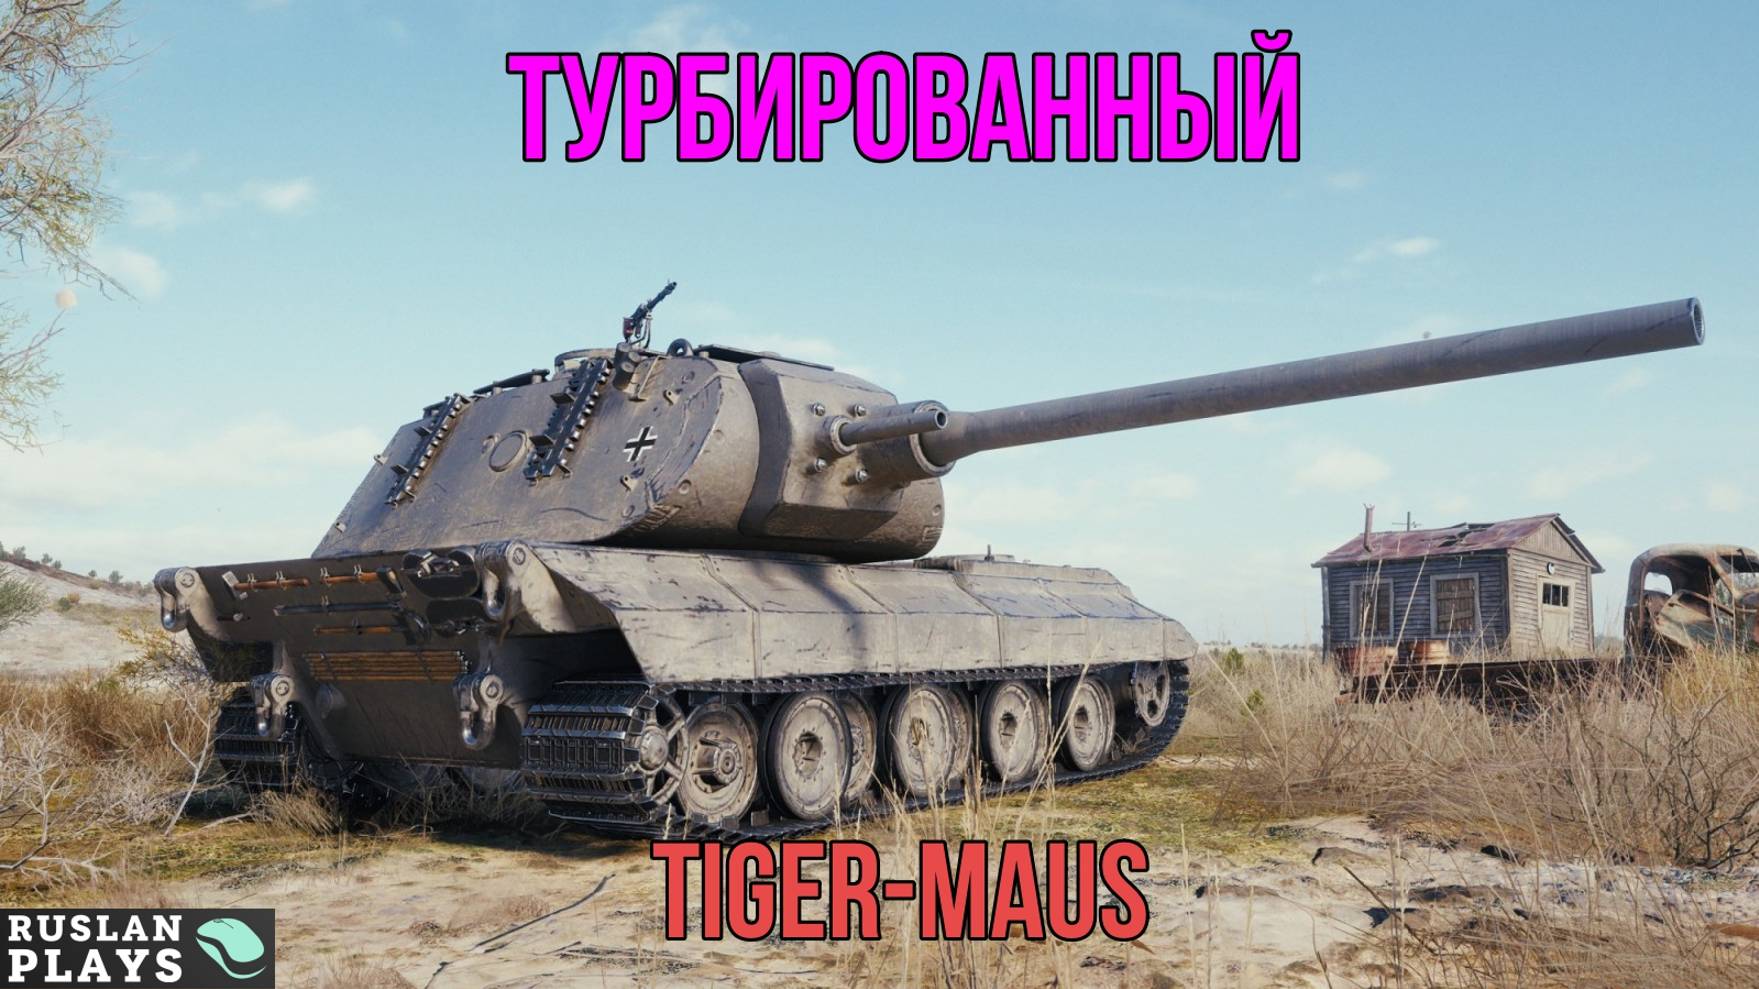 СКОРОСТЬ ЕМУ НЕ ПОМОЖЕТ 🔥 Tiger-Maus